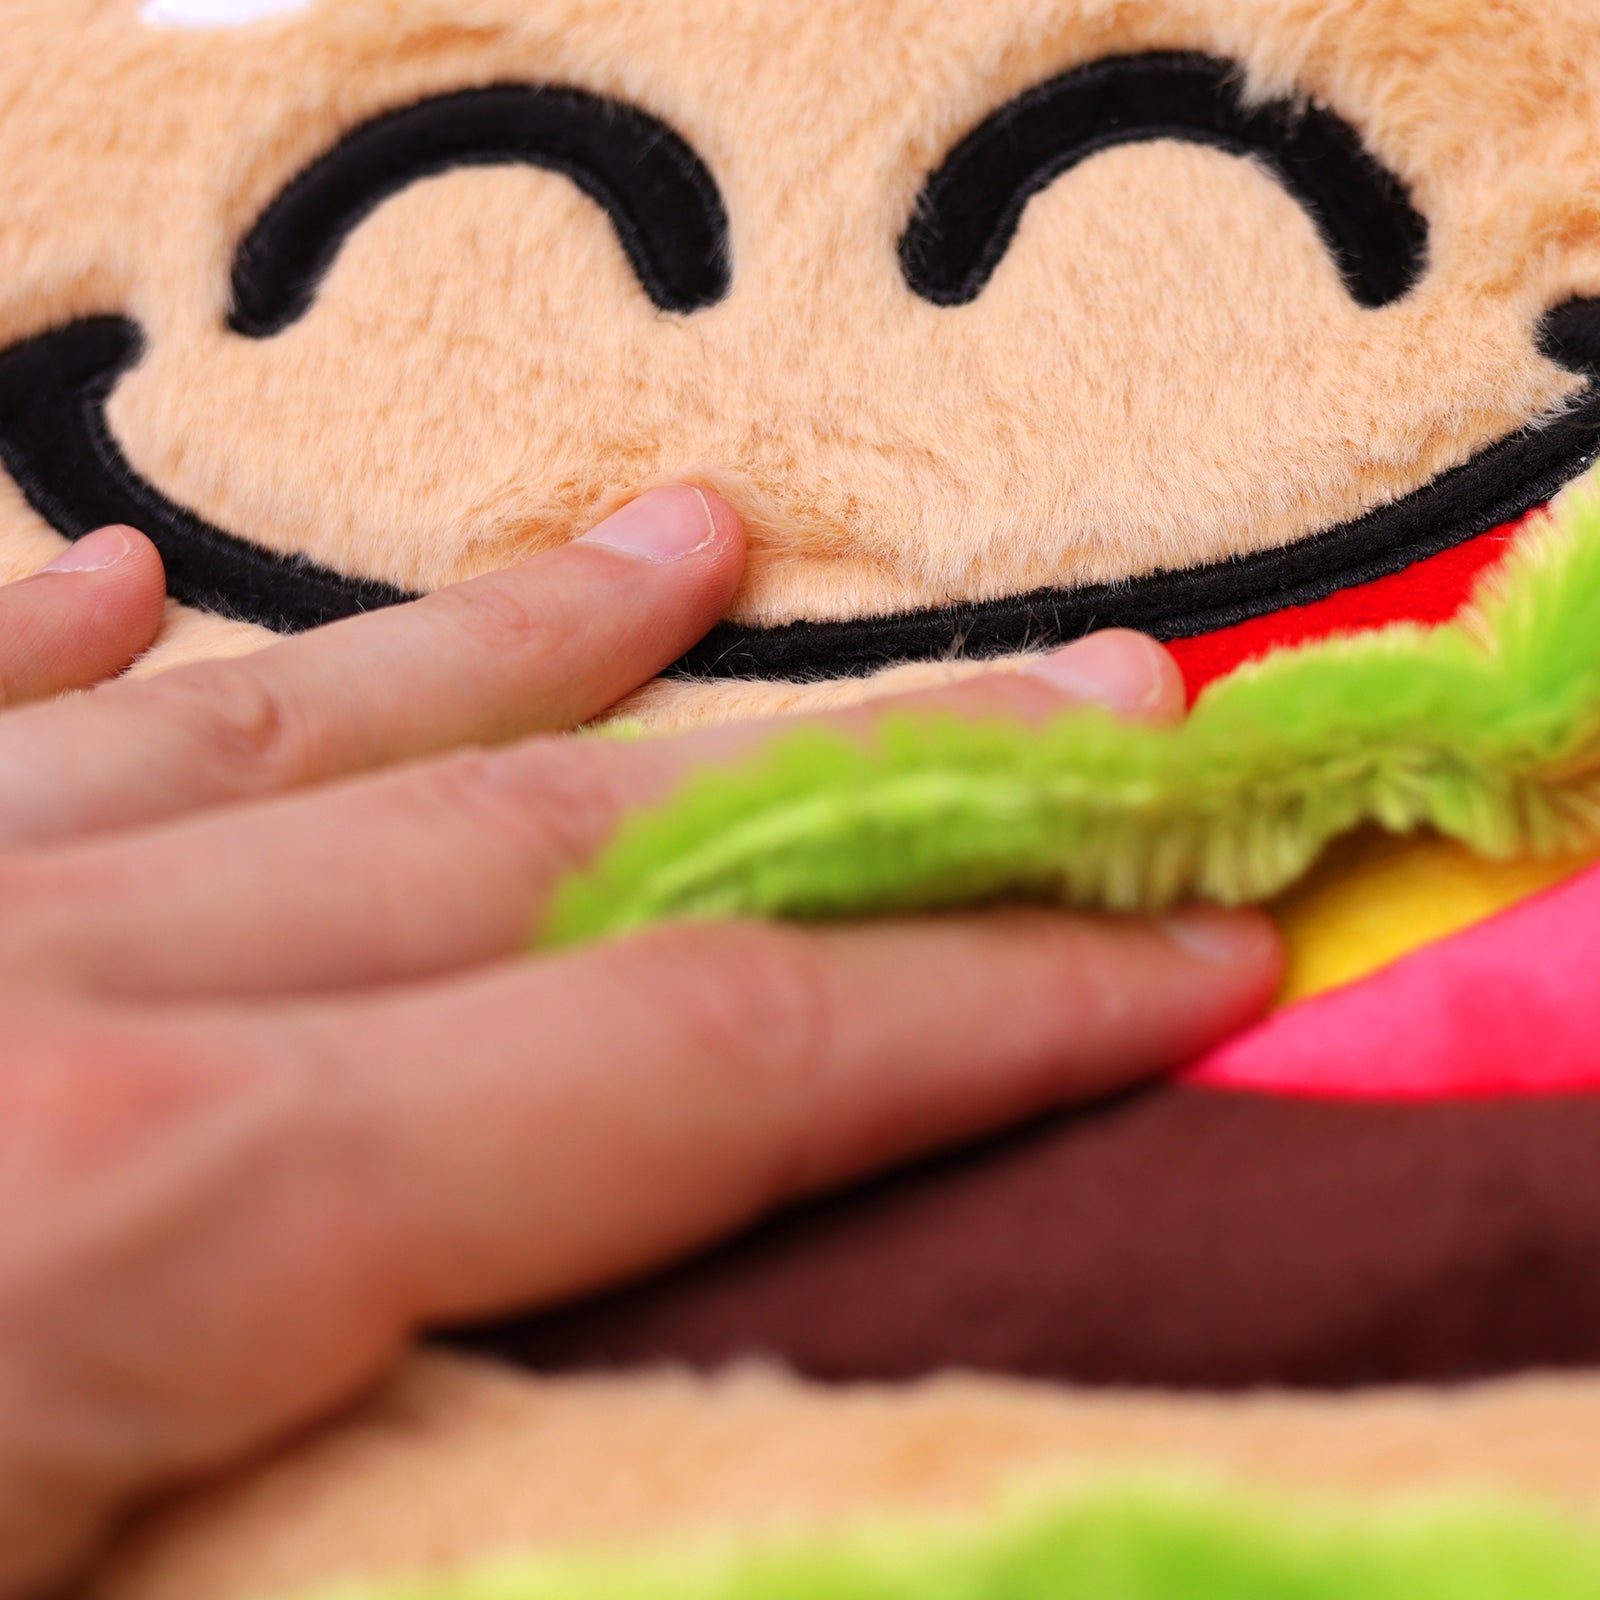 Shaggy Baggy Hamburger by Good Banana #SBBURG